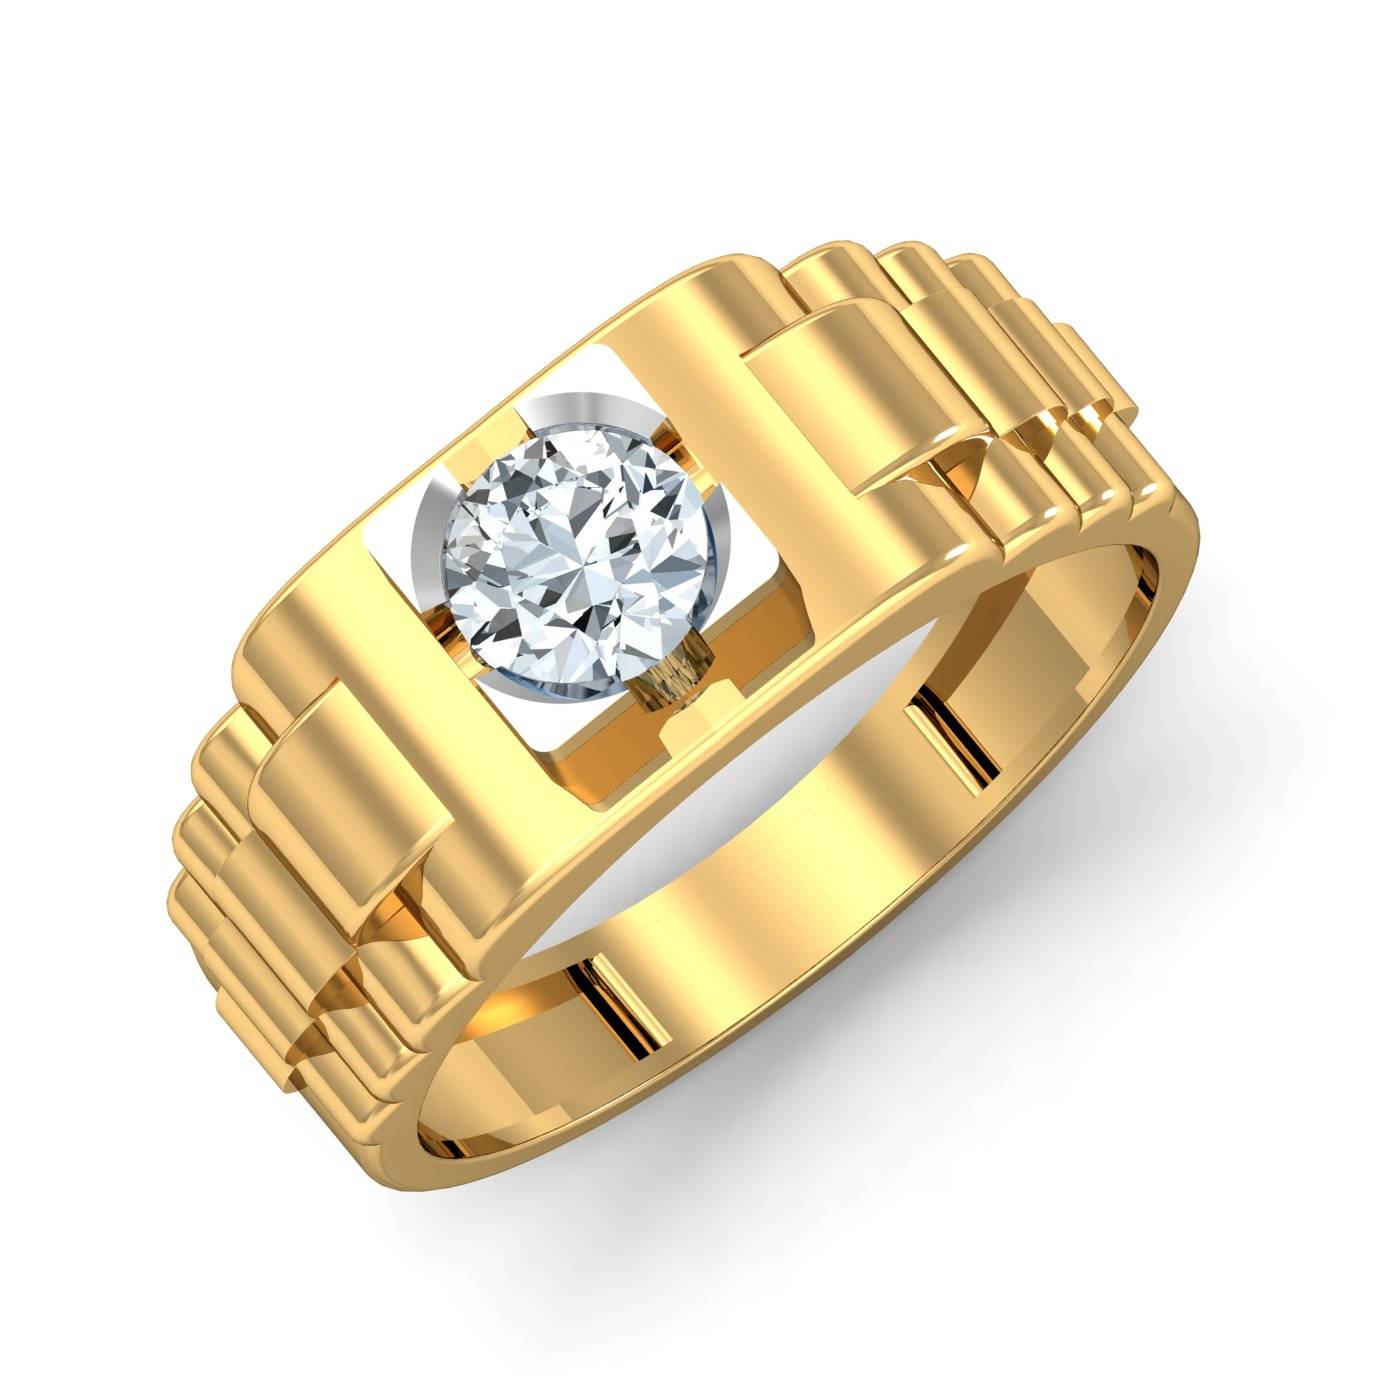 Virile Men's Ring